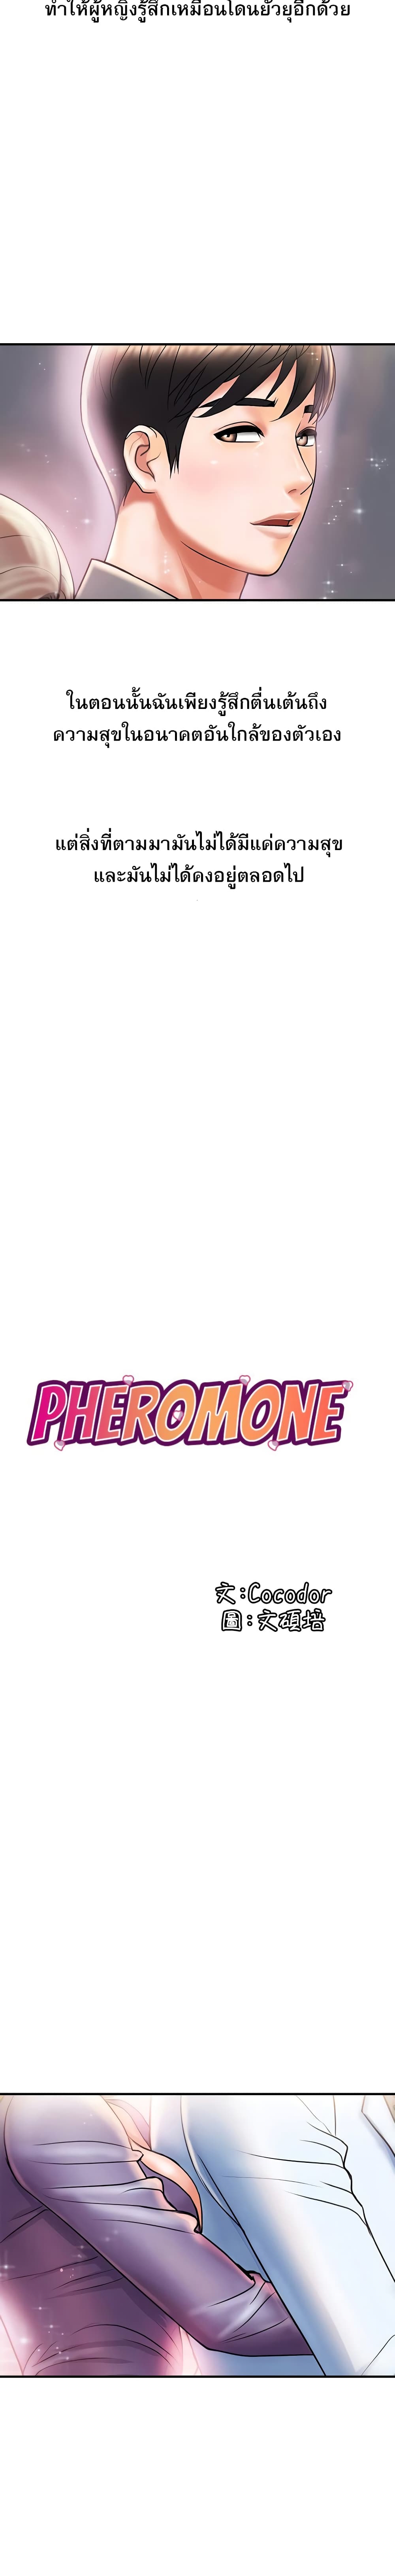 Pheromones 5 (3)